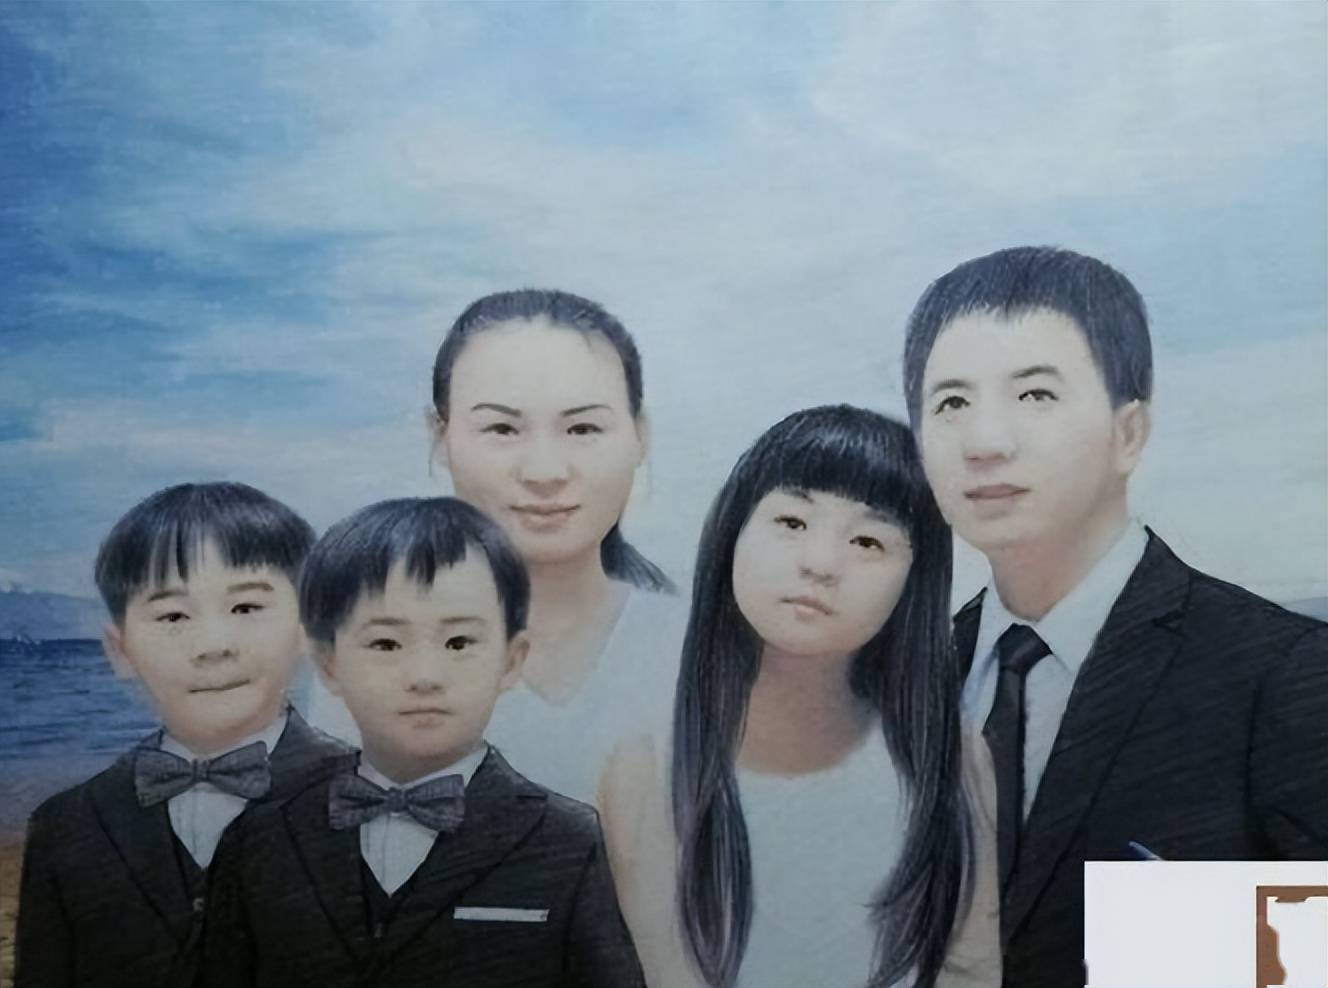 事发当天,林生斌有事外出,他的老婆朱小贞和三个孩子以及保姆在家中